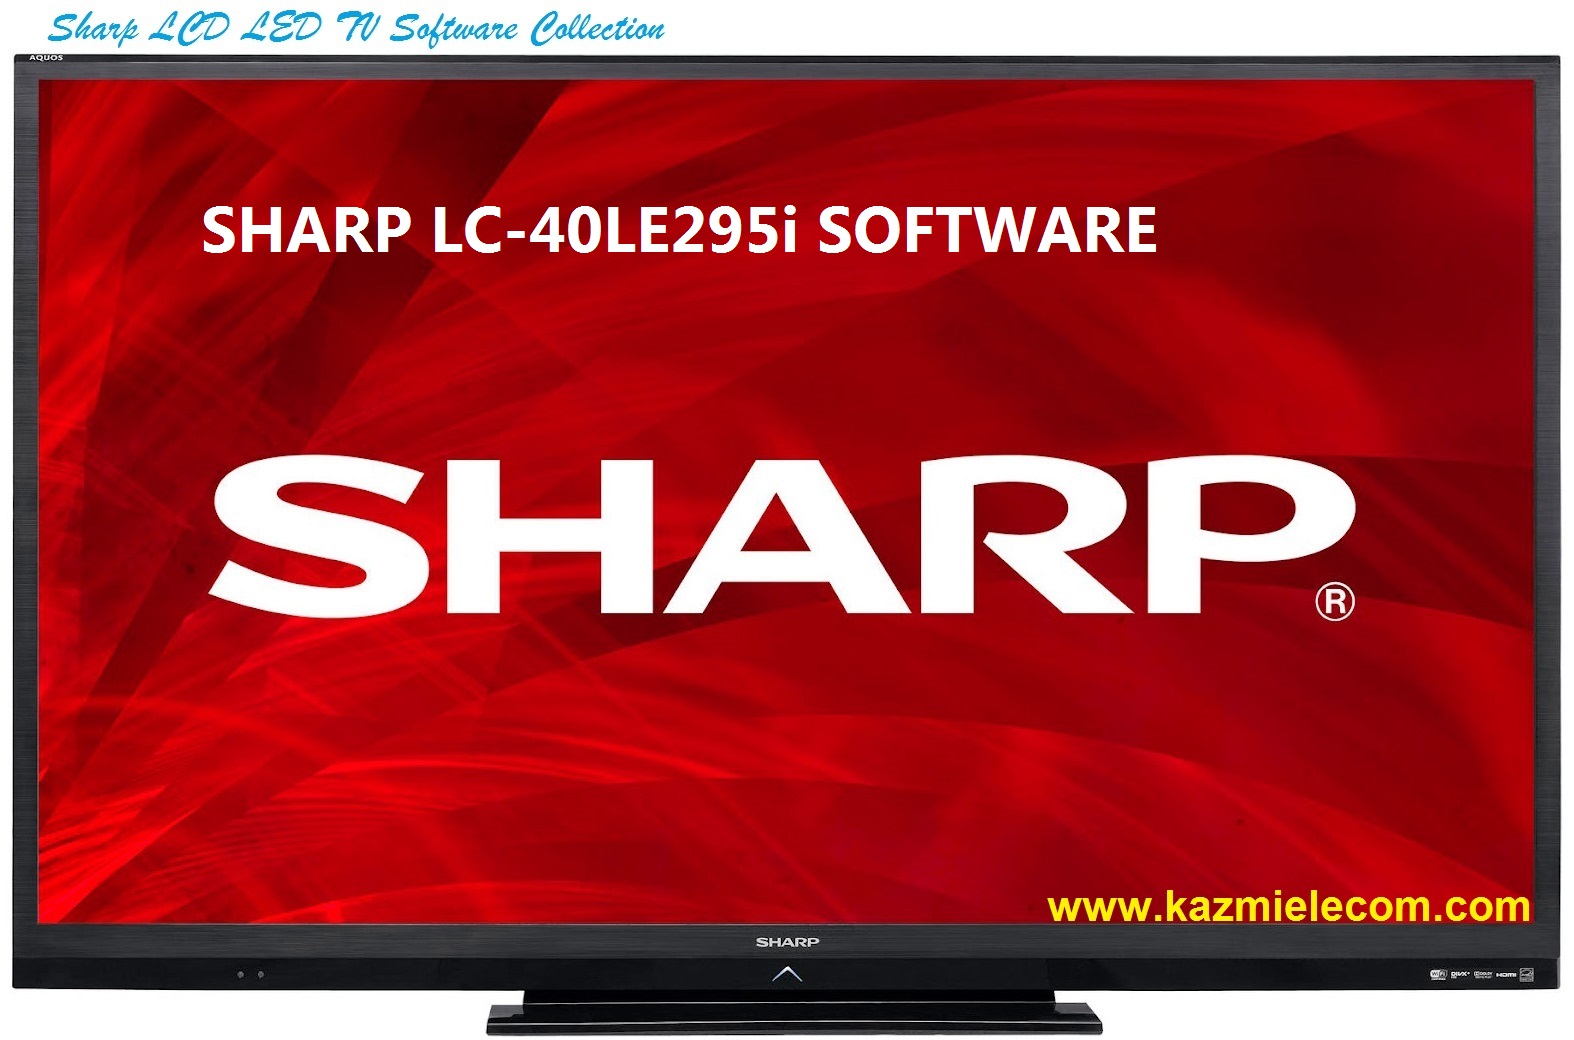 Sharp Lc-40Le295I